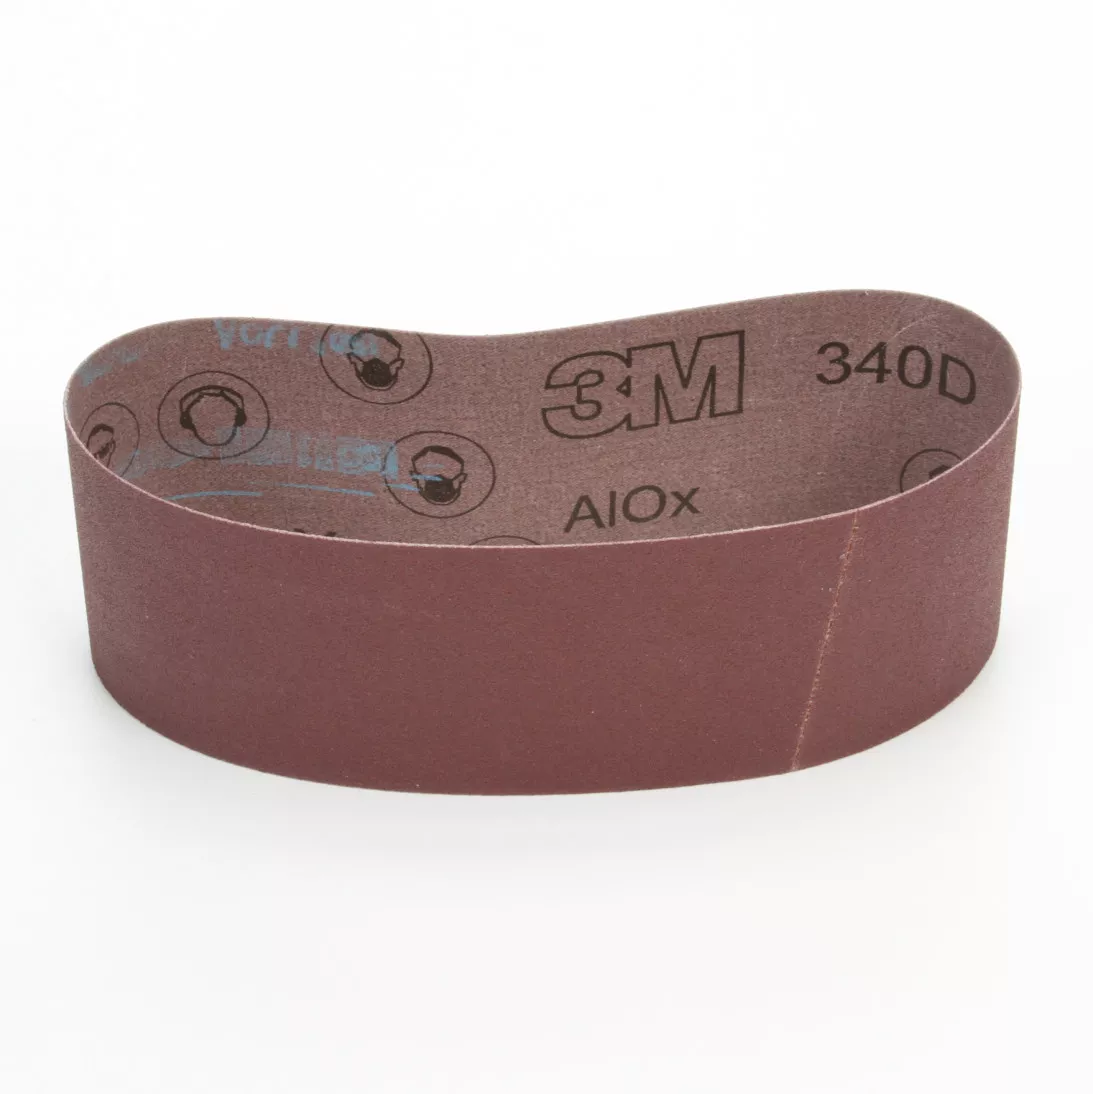 3M™ Cloth Belt 340D, 3 in x 24 in P100 X-weight, 10 per inner 50 per
case